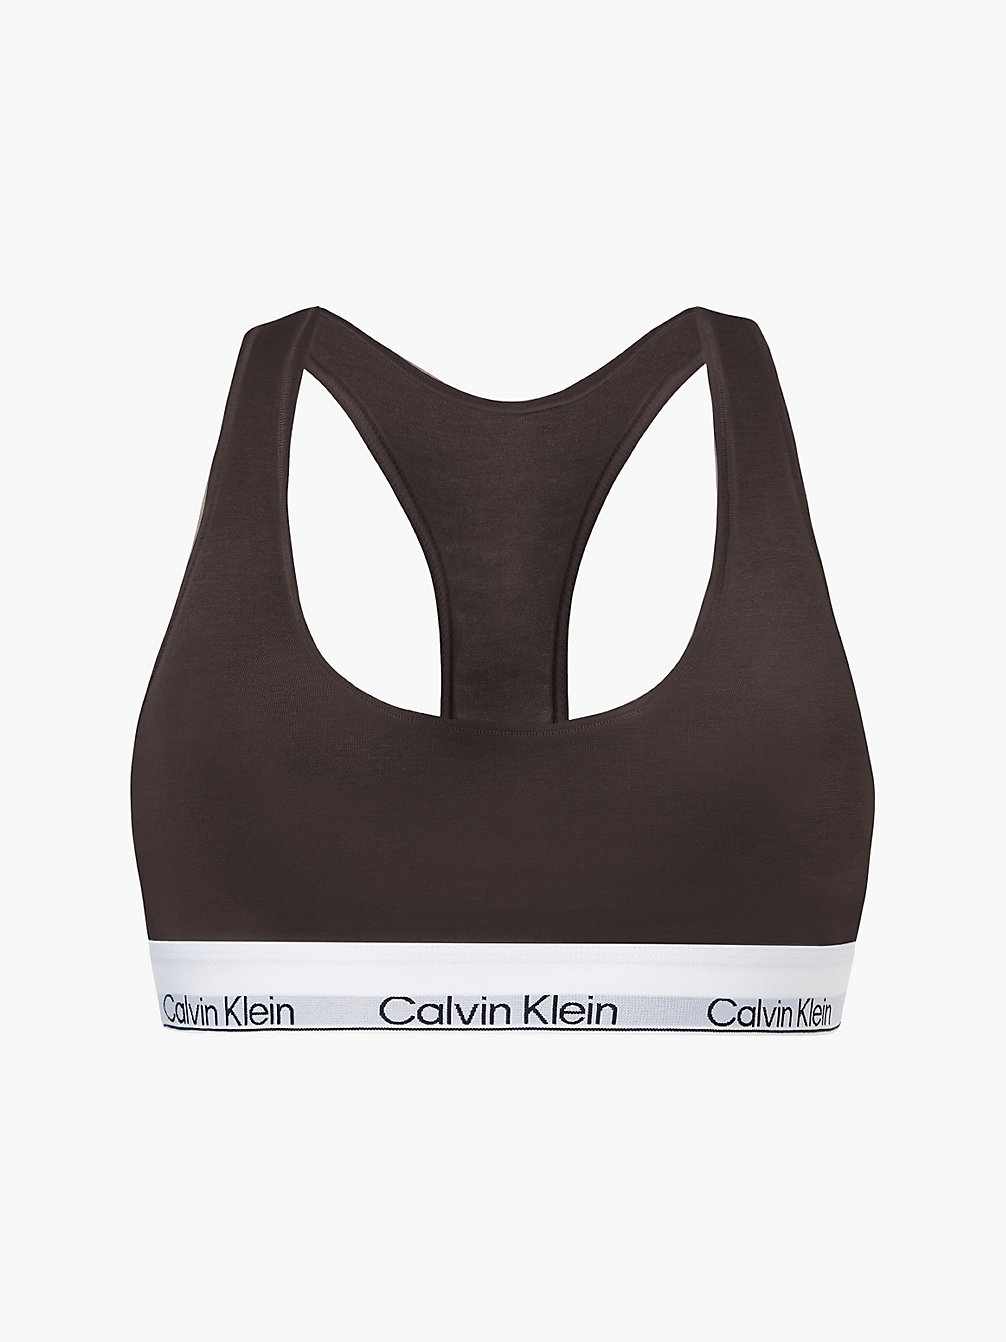 WOODLAND Bralette - Modern Cotton undefined women Calvin Klein